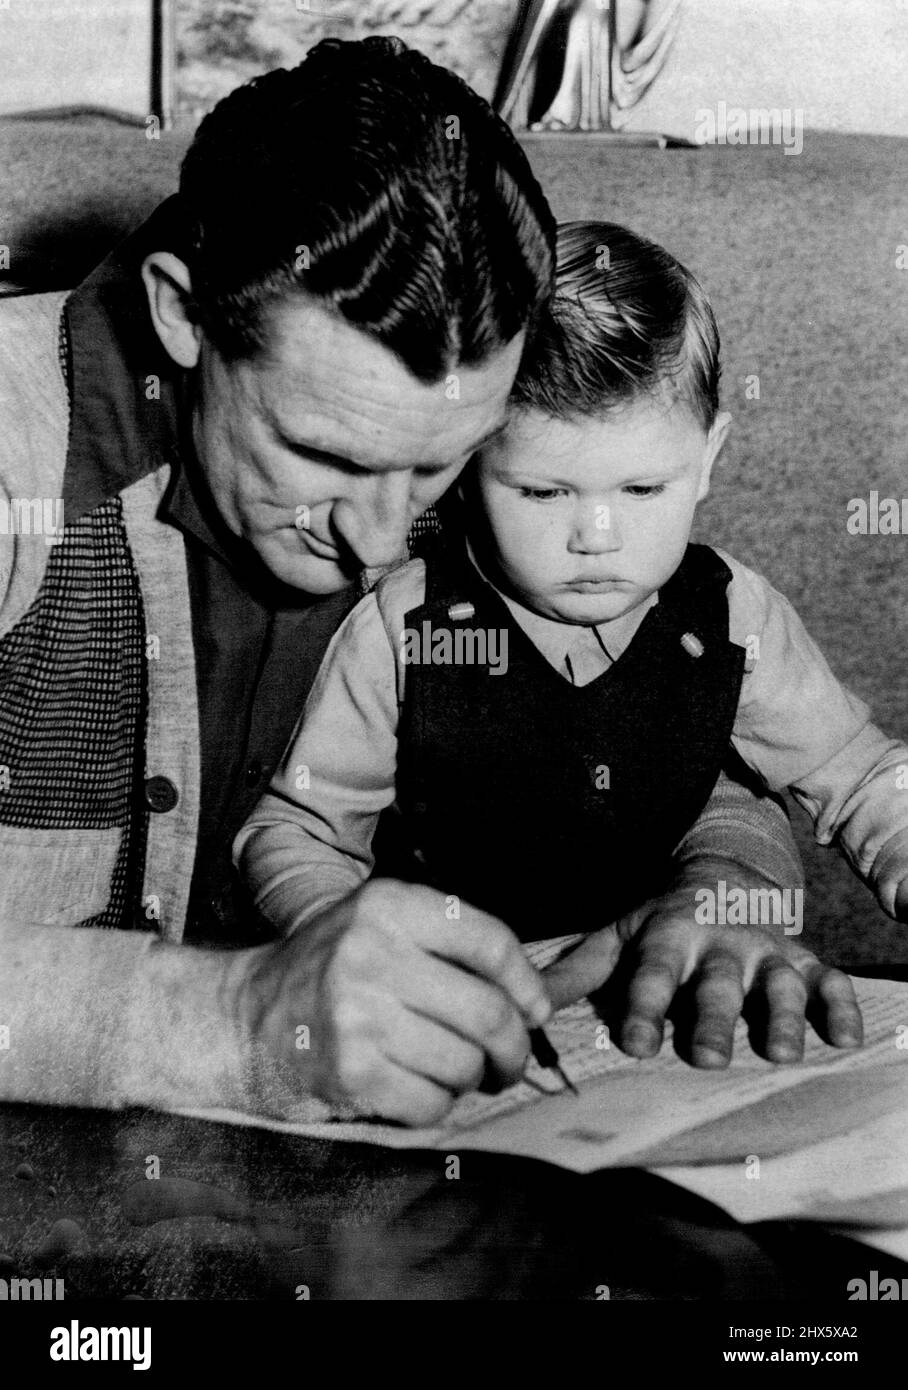 Cricketer W. Alley unterzeichnet den Colne Club-Vertrag, während sein 2½yr-alter Ken aufschaut. 6. August 1947. (Foto von Frank Albert Charles Burke/Fairfax Media). Stockfoto